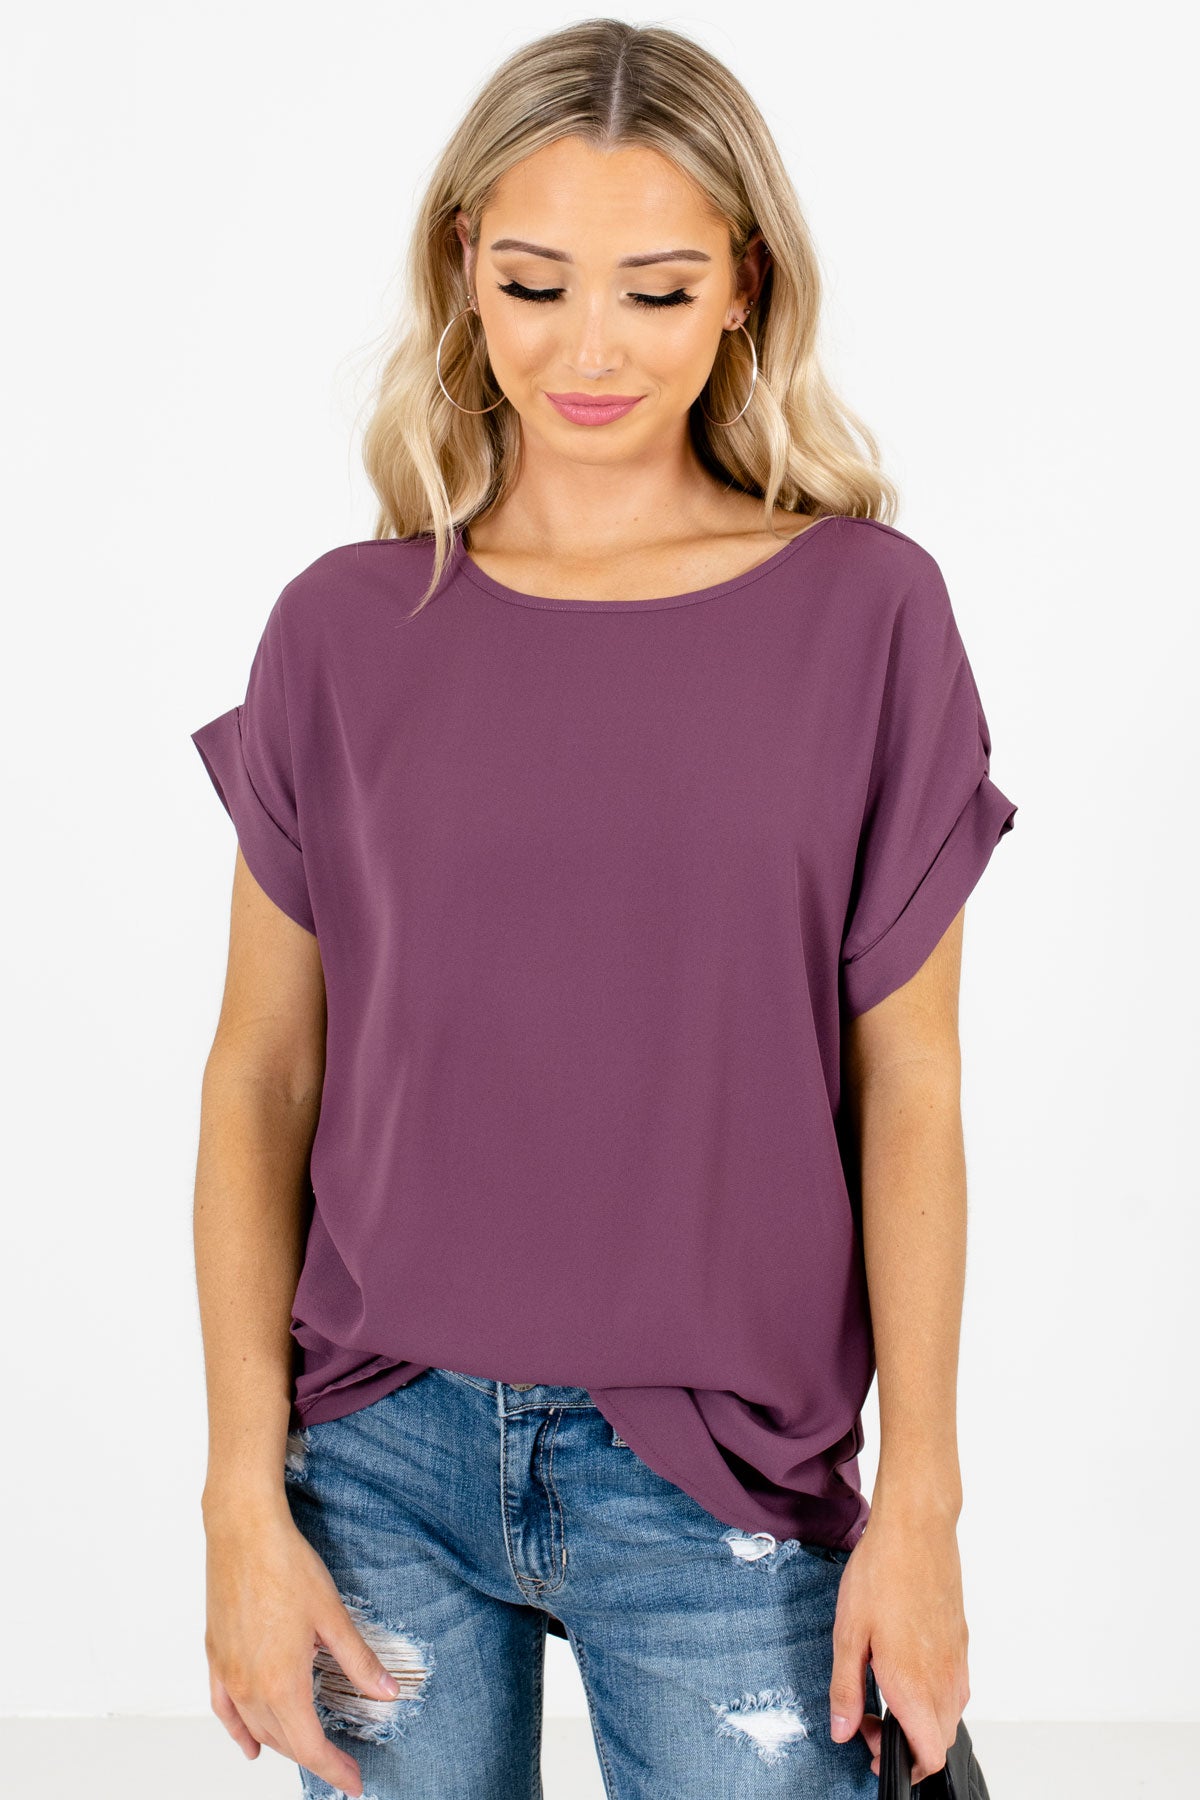 Women’s Purple Subtle High-Low Hem Boutique Blouse